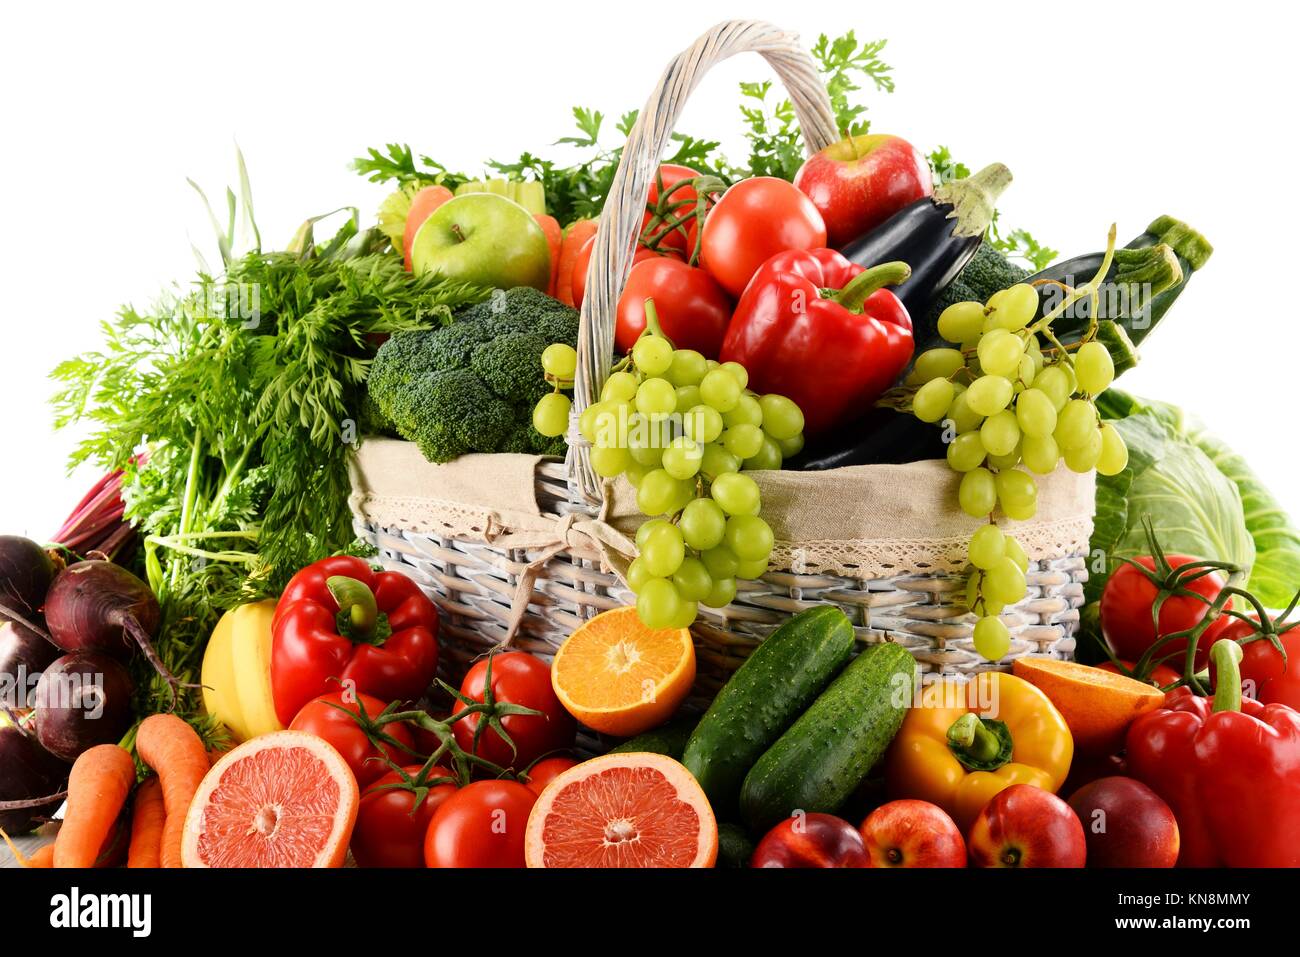 Без продуктовый. Овощи и фрукты. Корзина с овощами и фруктами. Овощи и фрукты на белом фоне. Овощи и фрукты на прозрачном фоне.